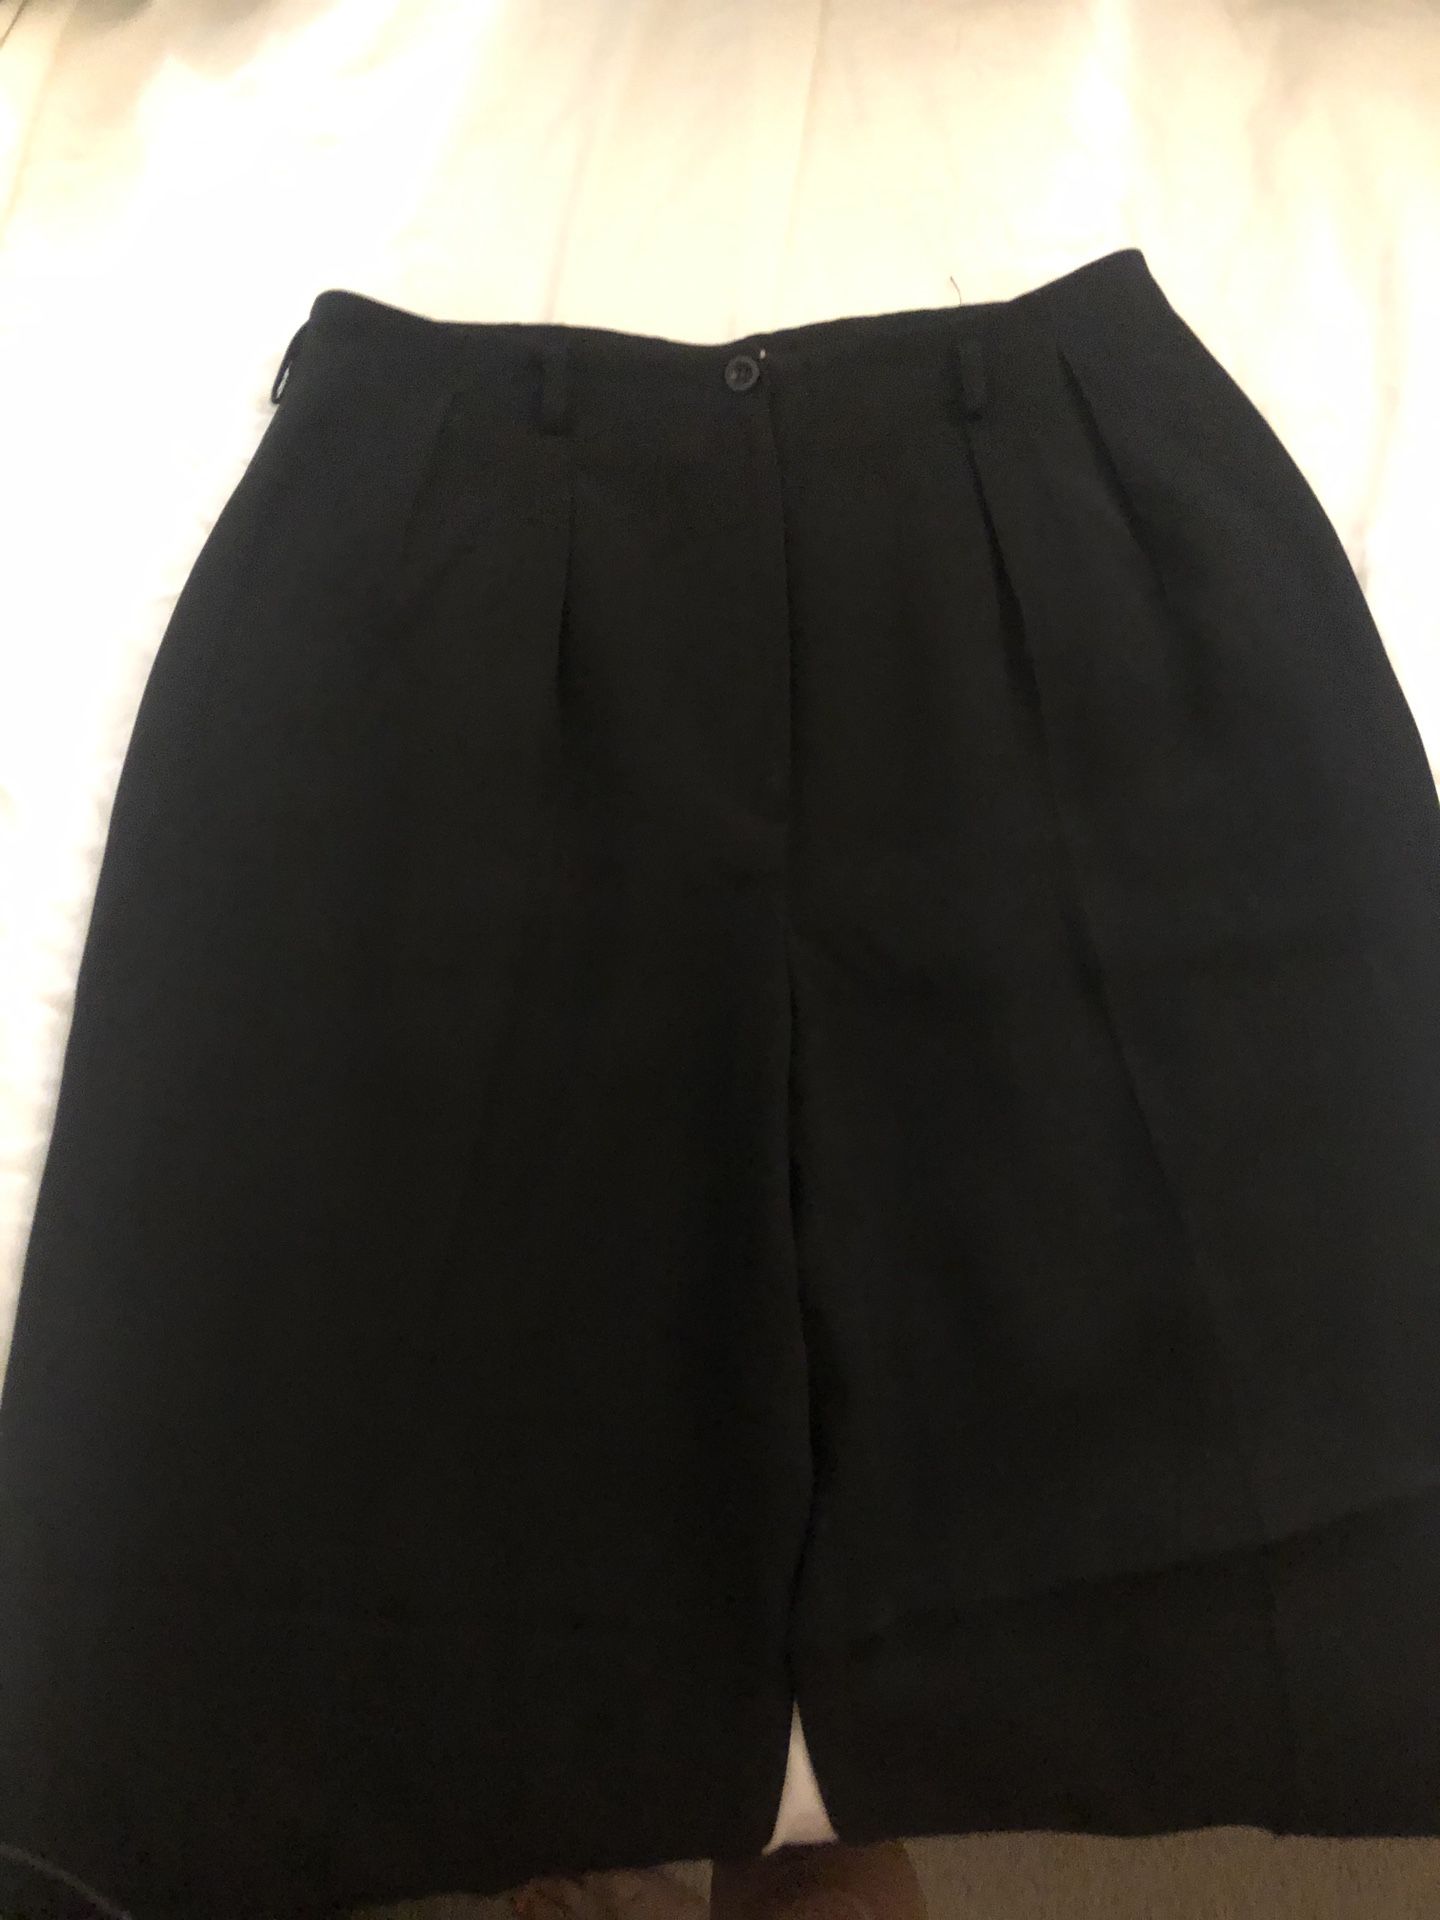 Free- womens black dress pants. Small size 10. Rena Rowen.